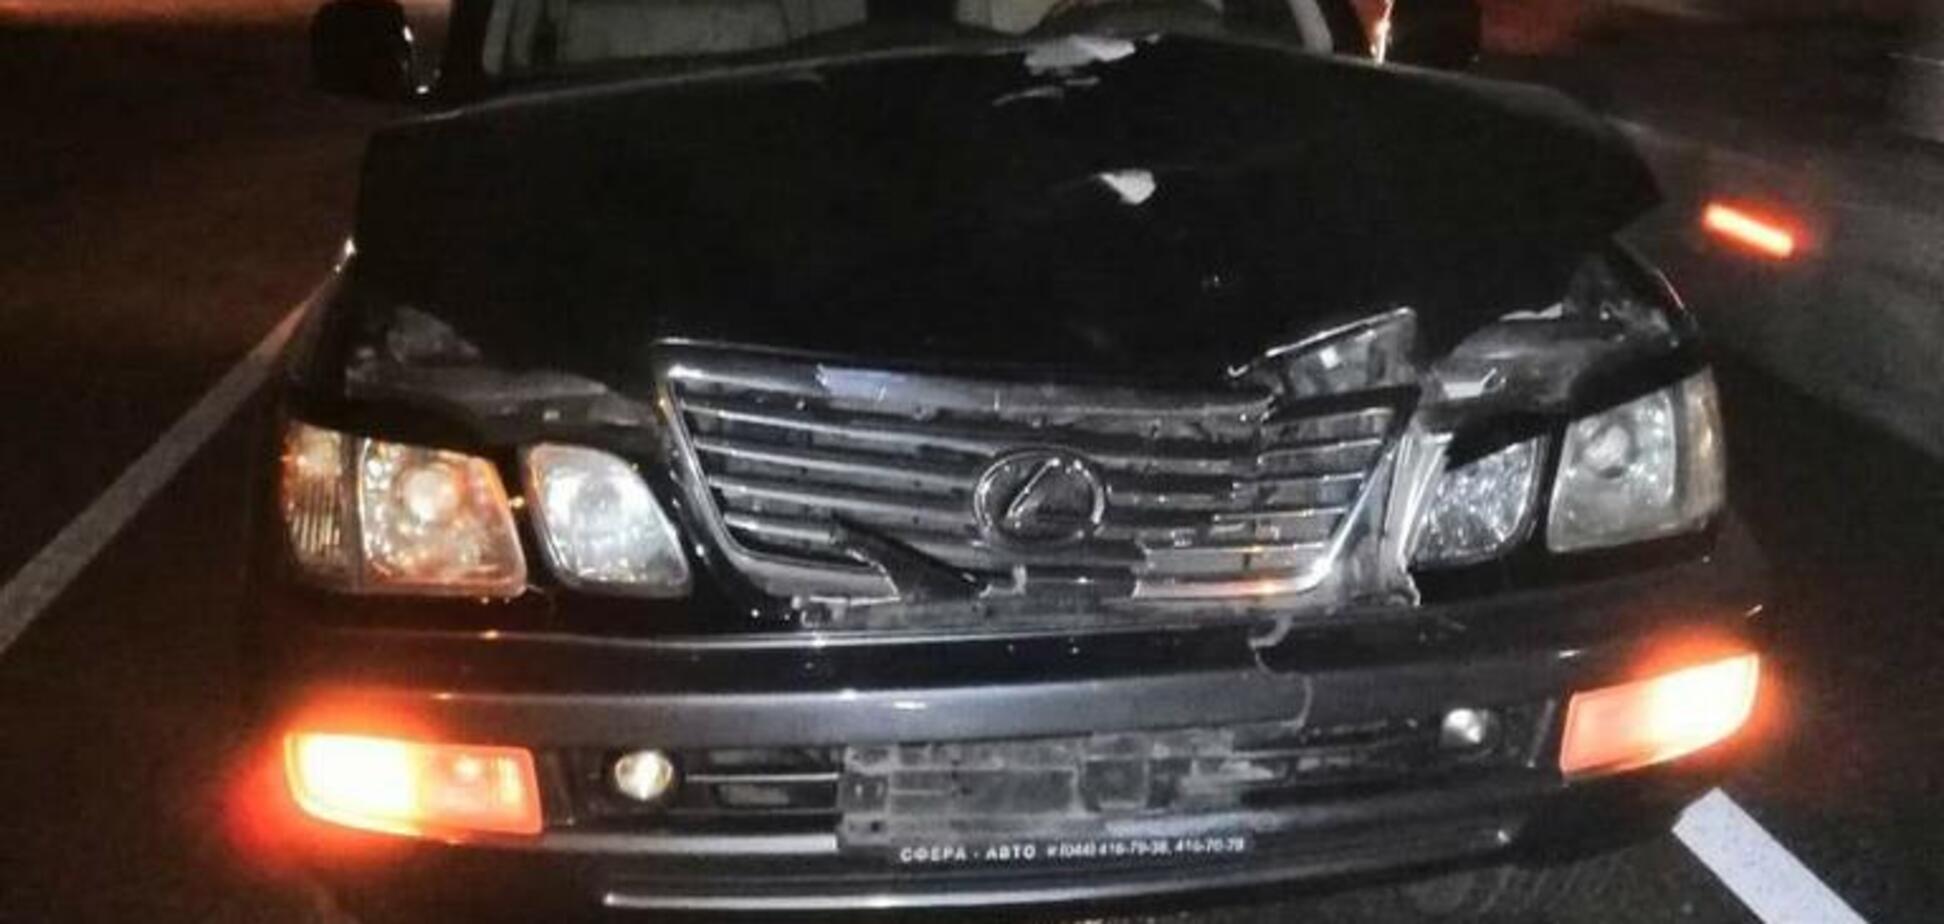 На Харьковщине произошло очередное смертельное ДТП с Lexus: фото с места аварии